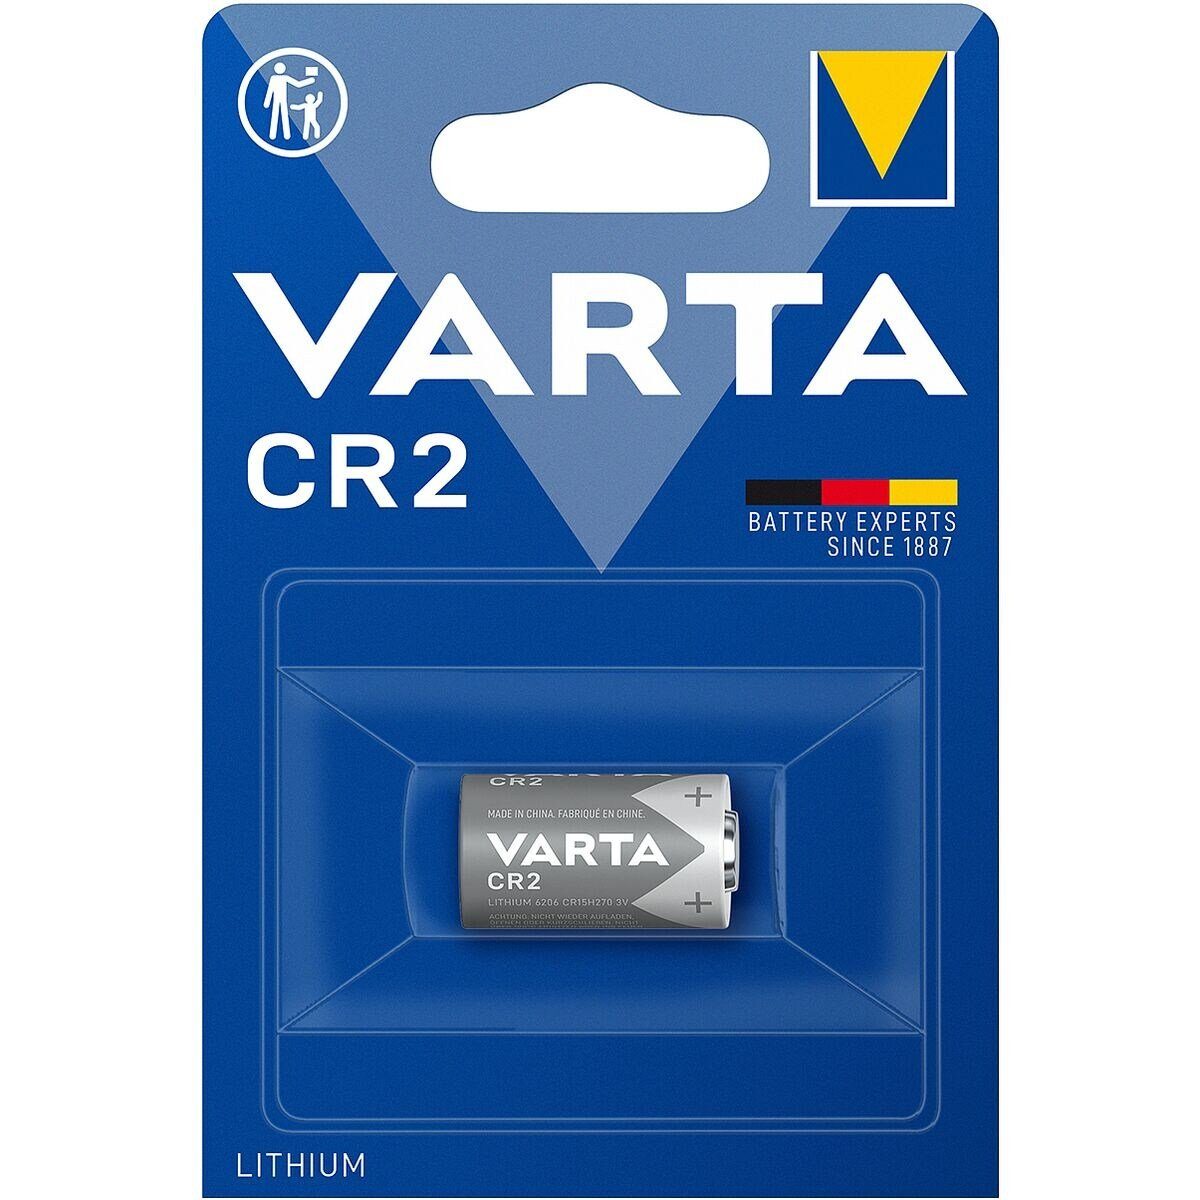 VARTA Photo Lithium Fotobatterie, (3 V, 1 St), CR2 / CR15H270, 3 V, Lithium